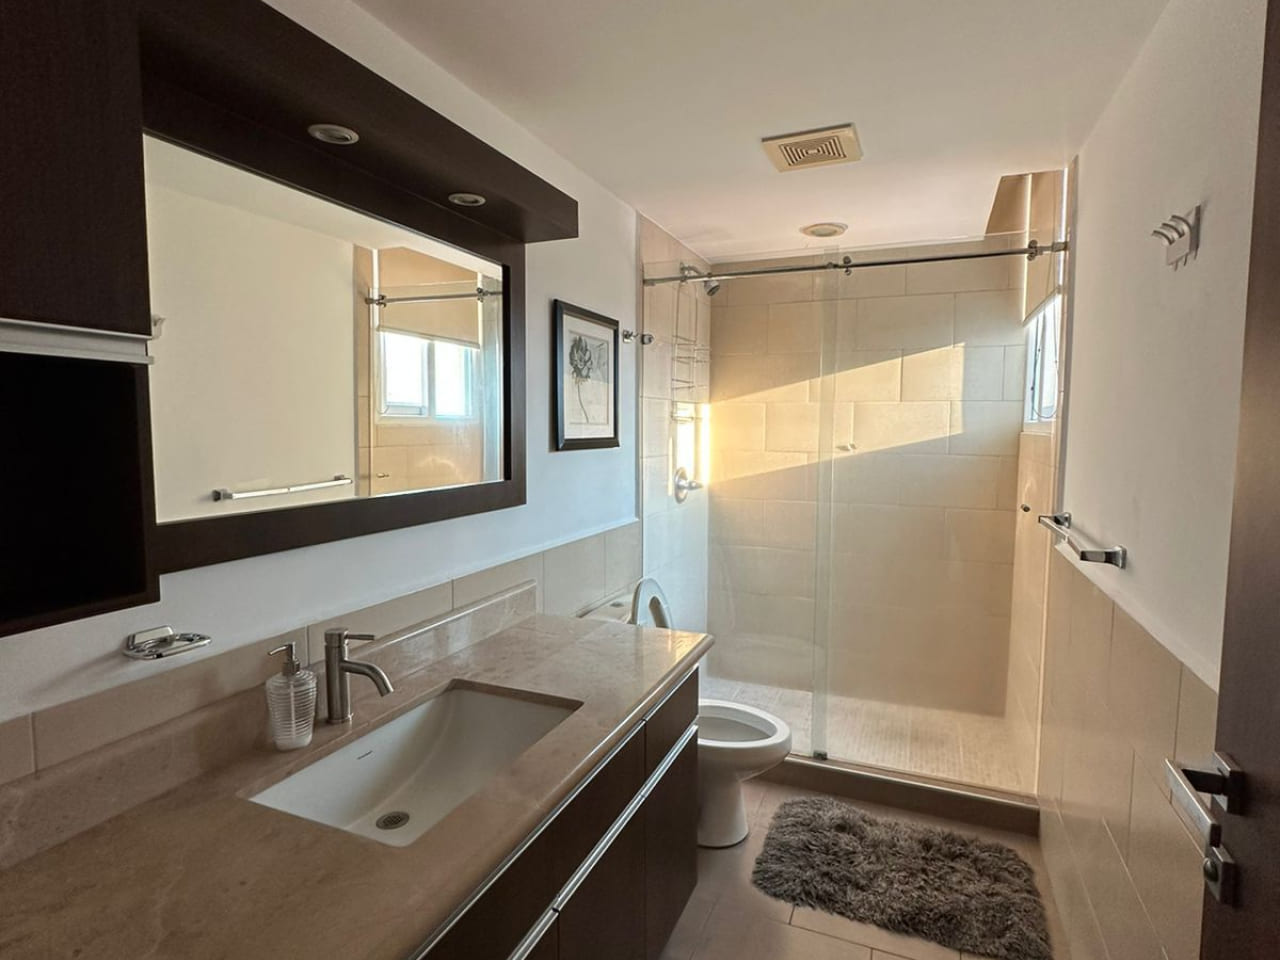 Baño completo con paredes de color blanco, regadera de cerámica, con retrete de color blanco, lavamanos moderno con mesa con superficie de cerámica, amplio espejo.